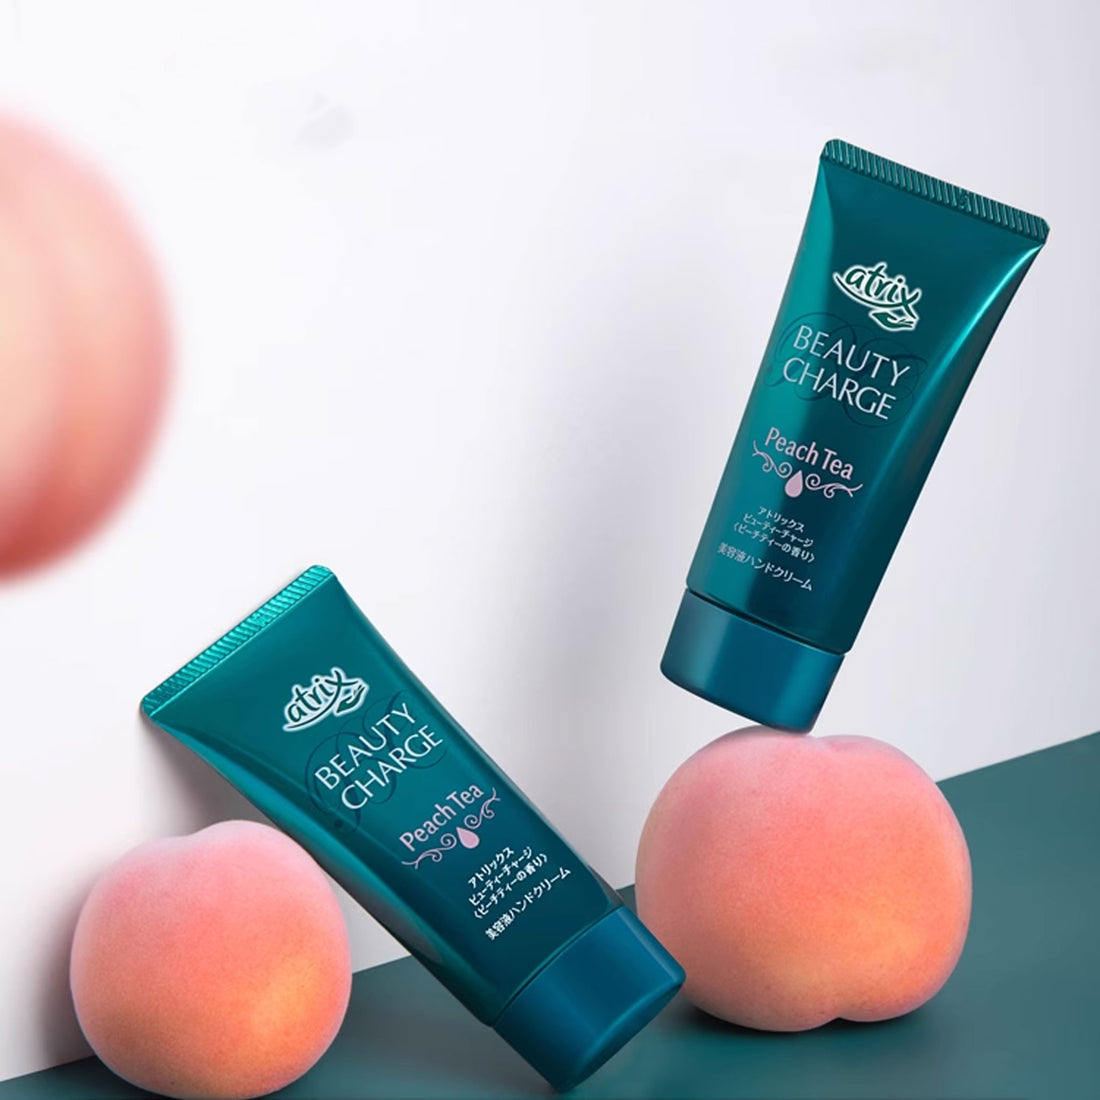 KAO Atrix Beauty Charge Hand Cream Peach Tea 80g